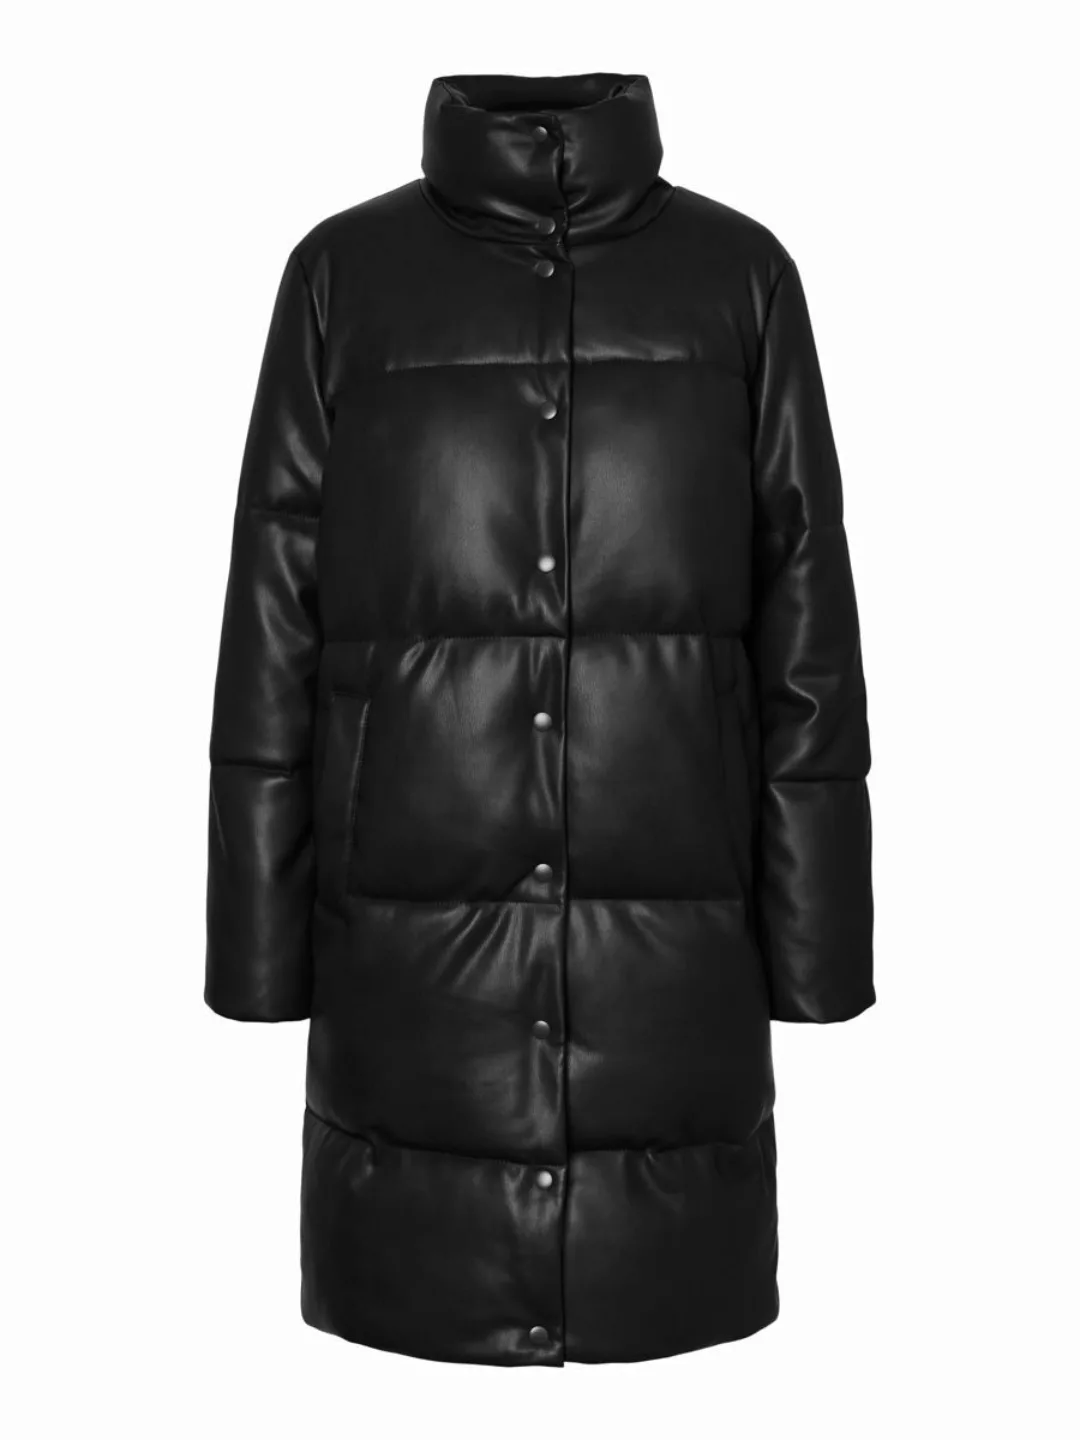 VERO MODA Beschichtete Jacke Damen Schwarz günstig online kaufen